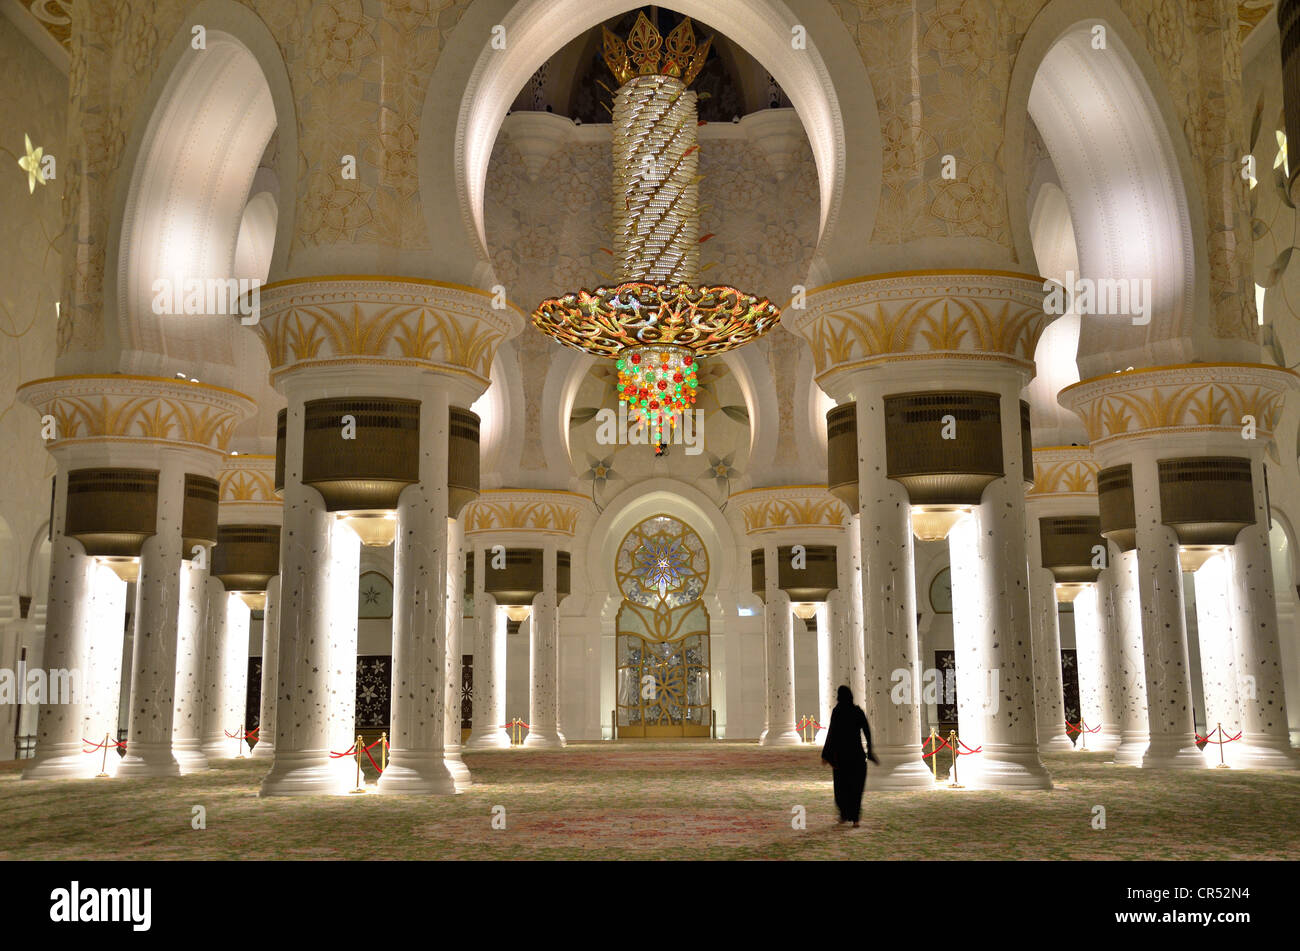 Verschleierte Frau im Gebetssaal der Sheikh-Zayed-Moschee, Abu Dhabi, Vereinigte Arabische Emirate, Arabische Halbinsel, Asien Stockfoto